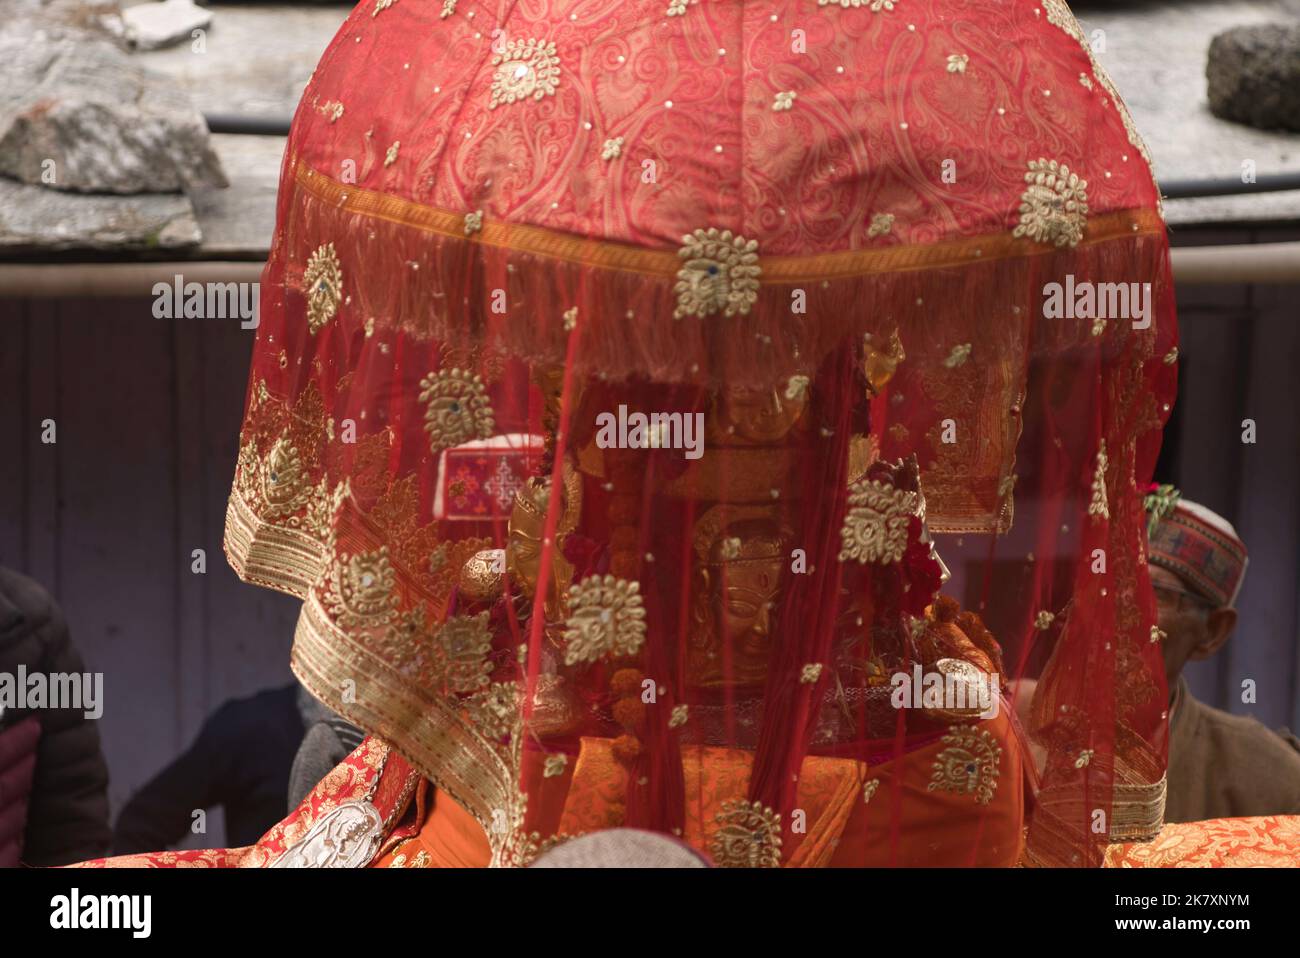 Nahaufnahme der Berggottheit Devta Goddess, die in ihrem Palanquin saß, mit einem roten Tuch, das sie bedeckte Stockfoto